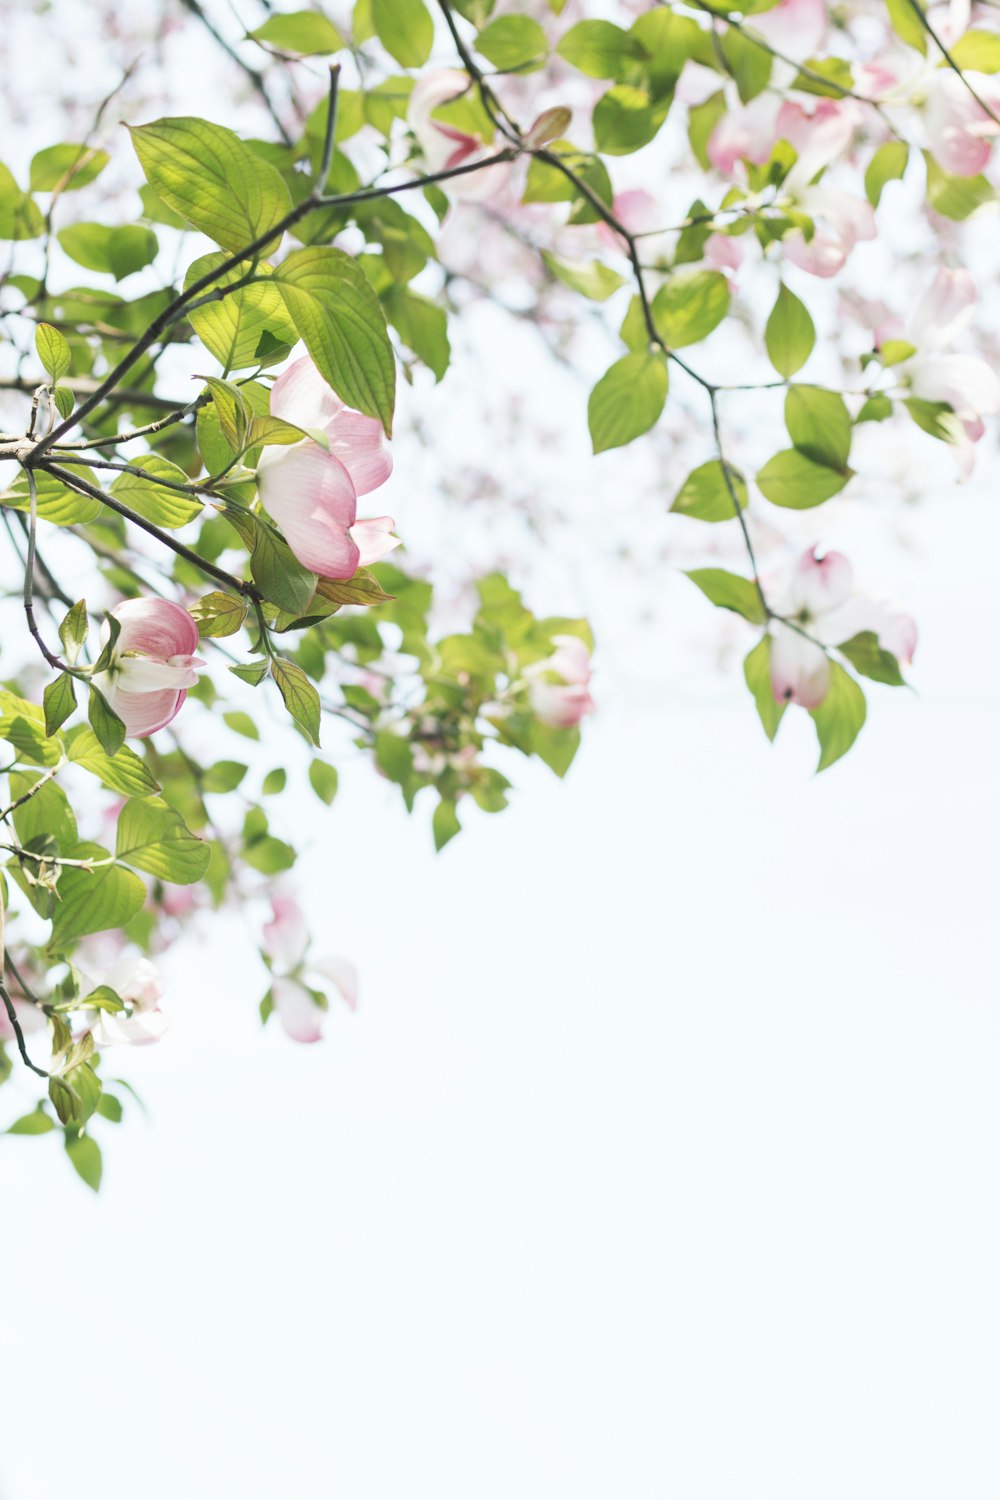 Fotografía de enfoque superficial de árbol con flores rosadas